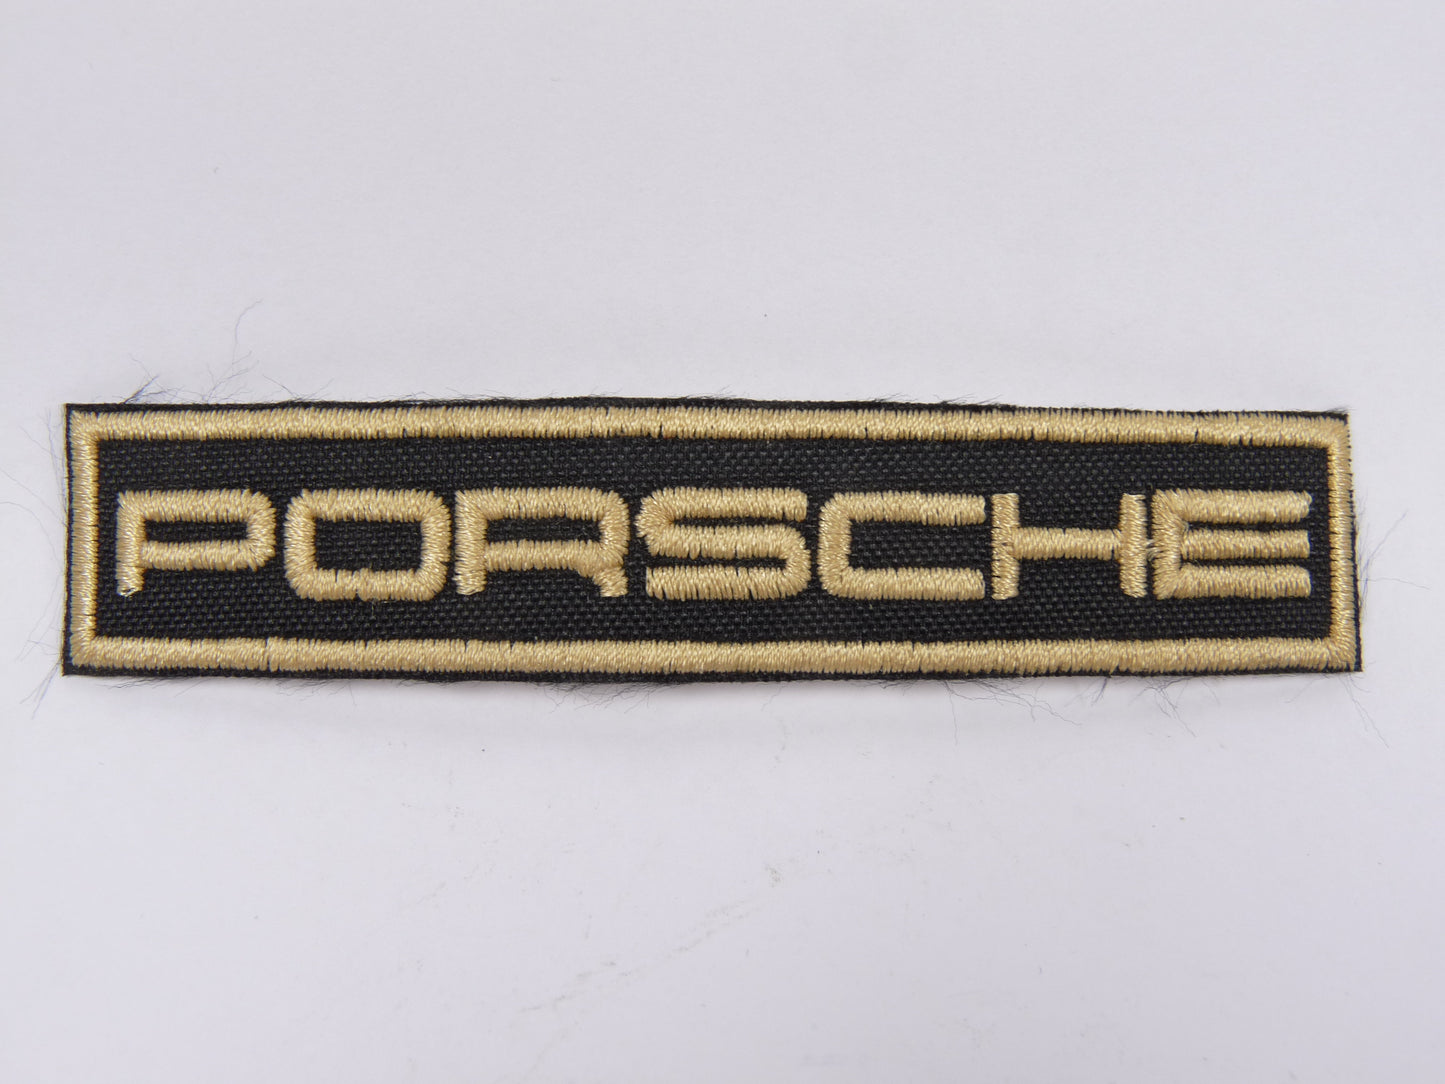 PTC114 Patch brodé thermocollé : logo Porsche ecriture largeur environ 9.7 cm hauteur environ 2 cm